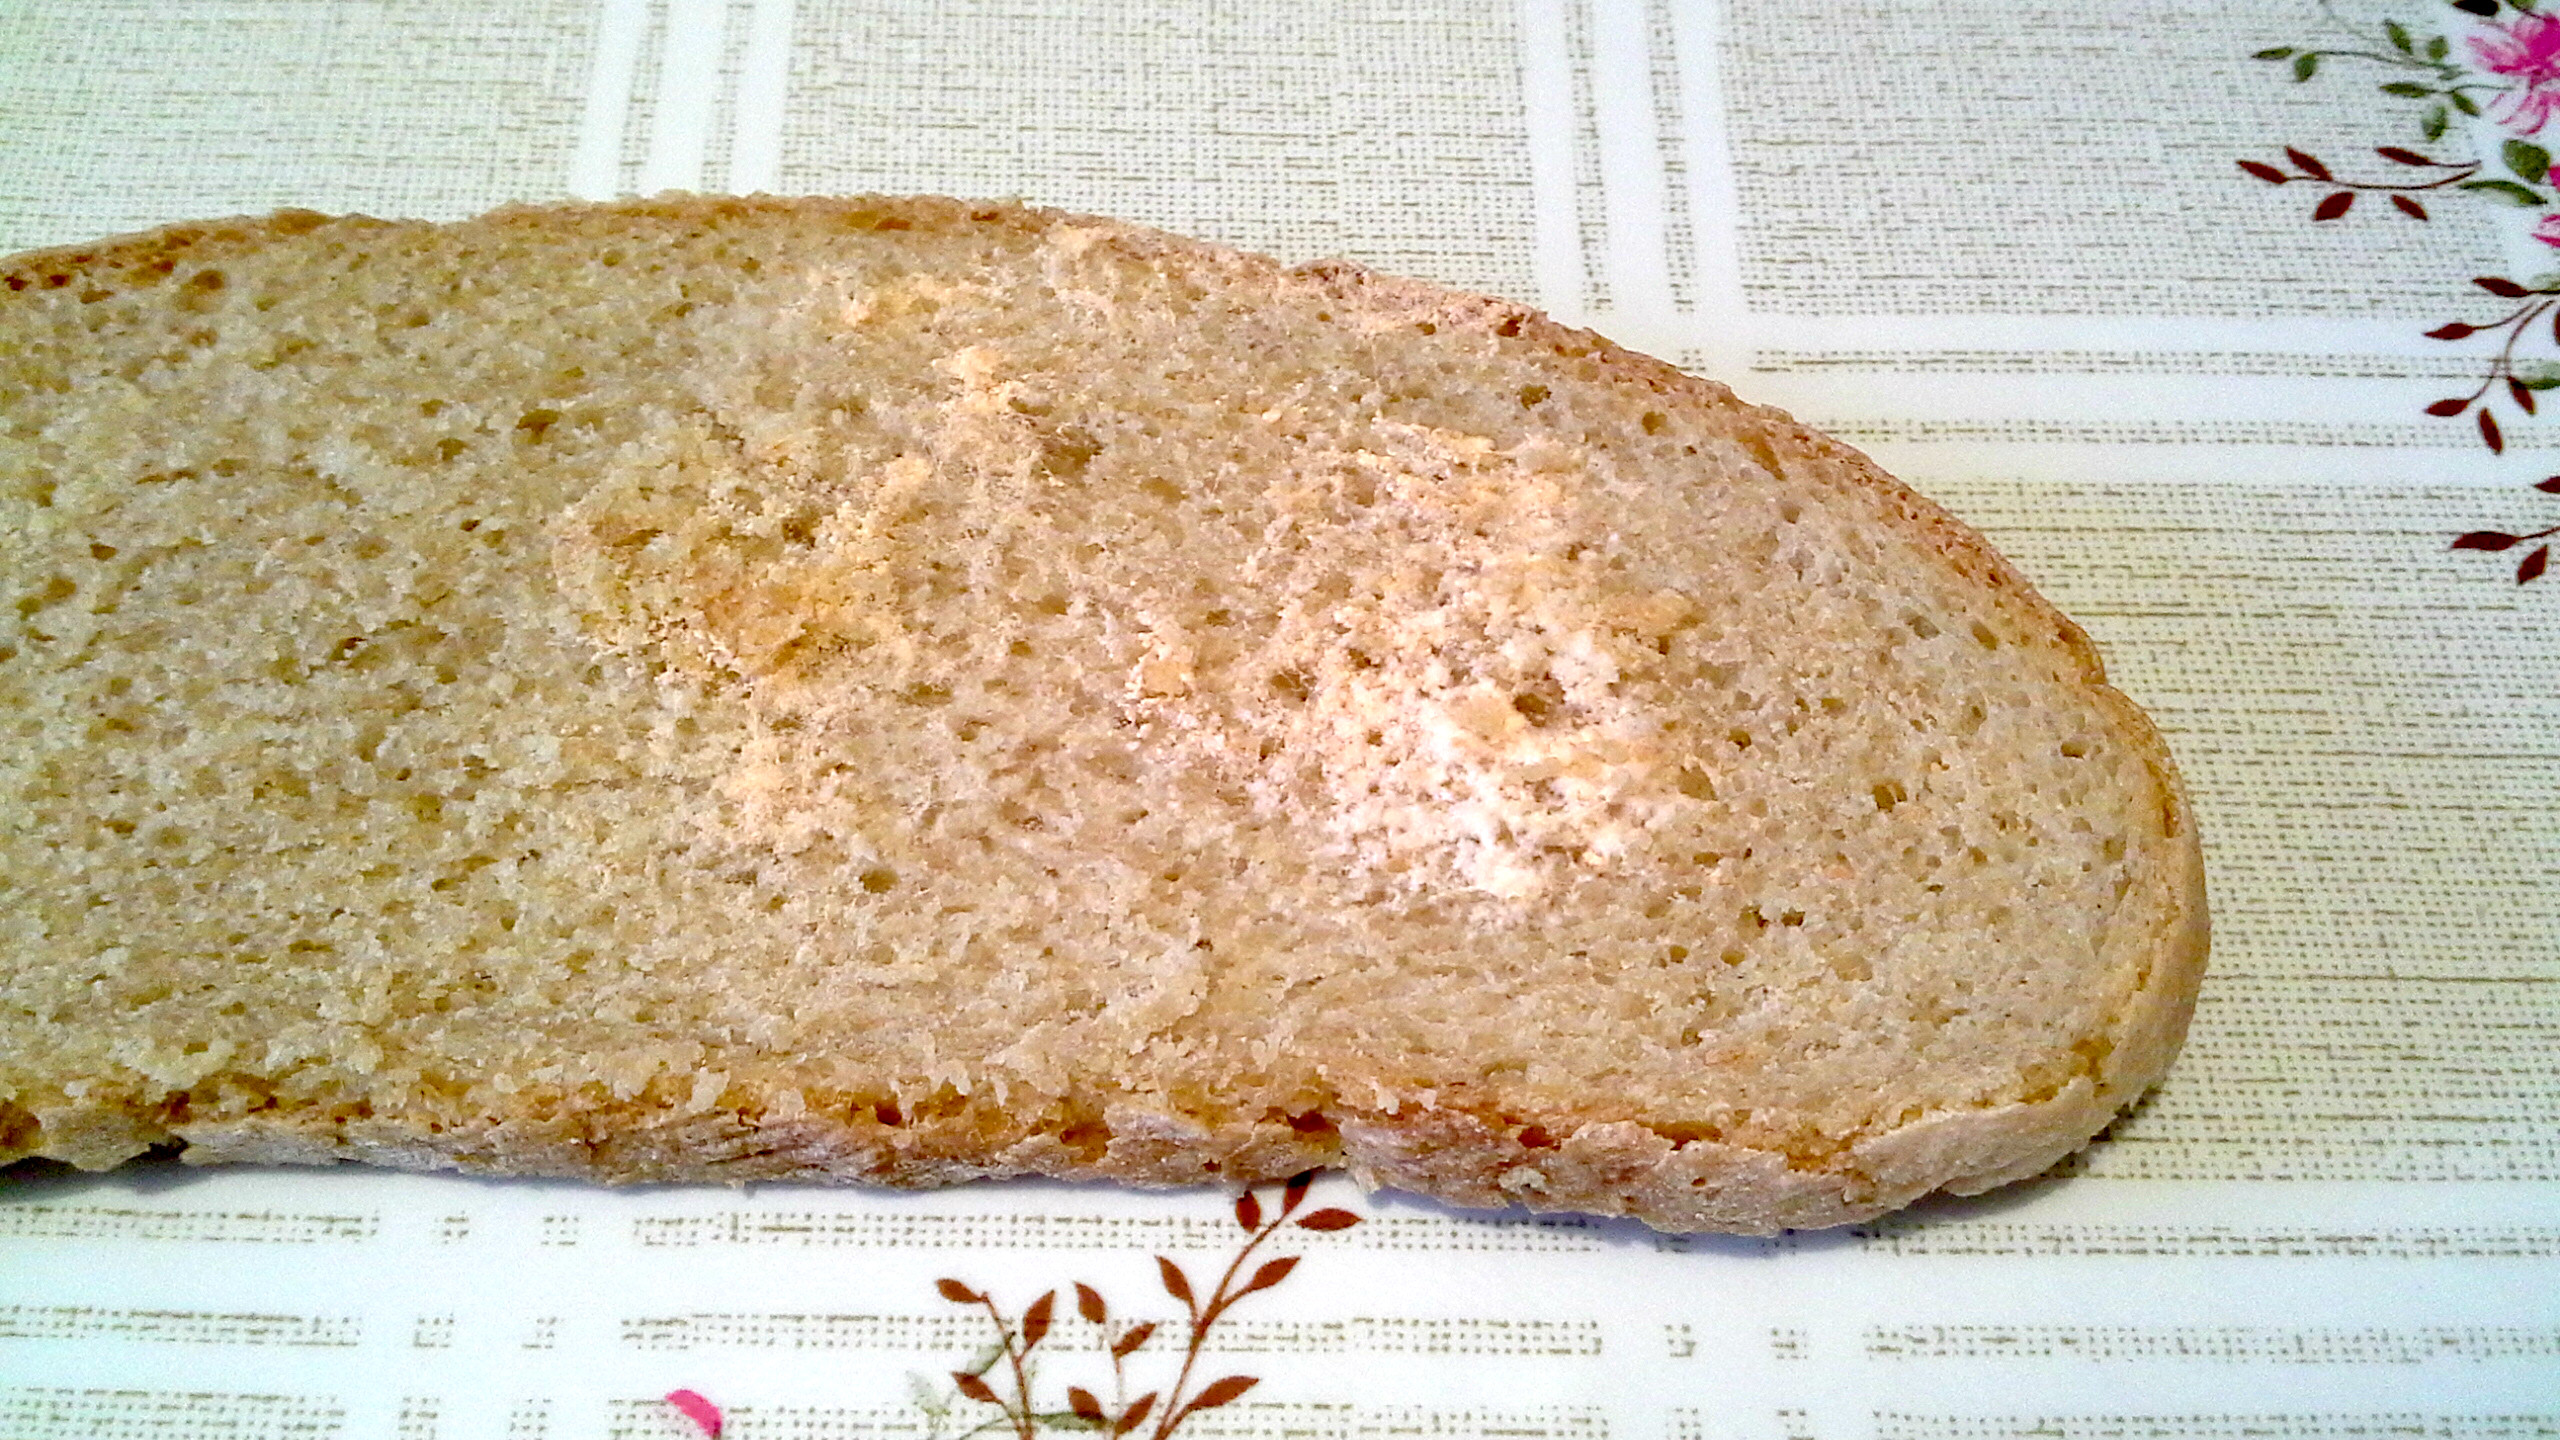 Металлическая болезнь хлеба фото